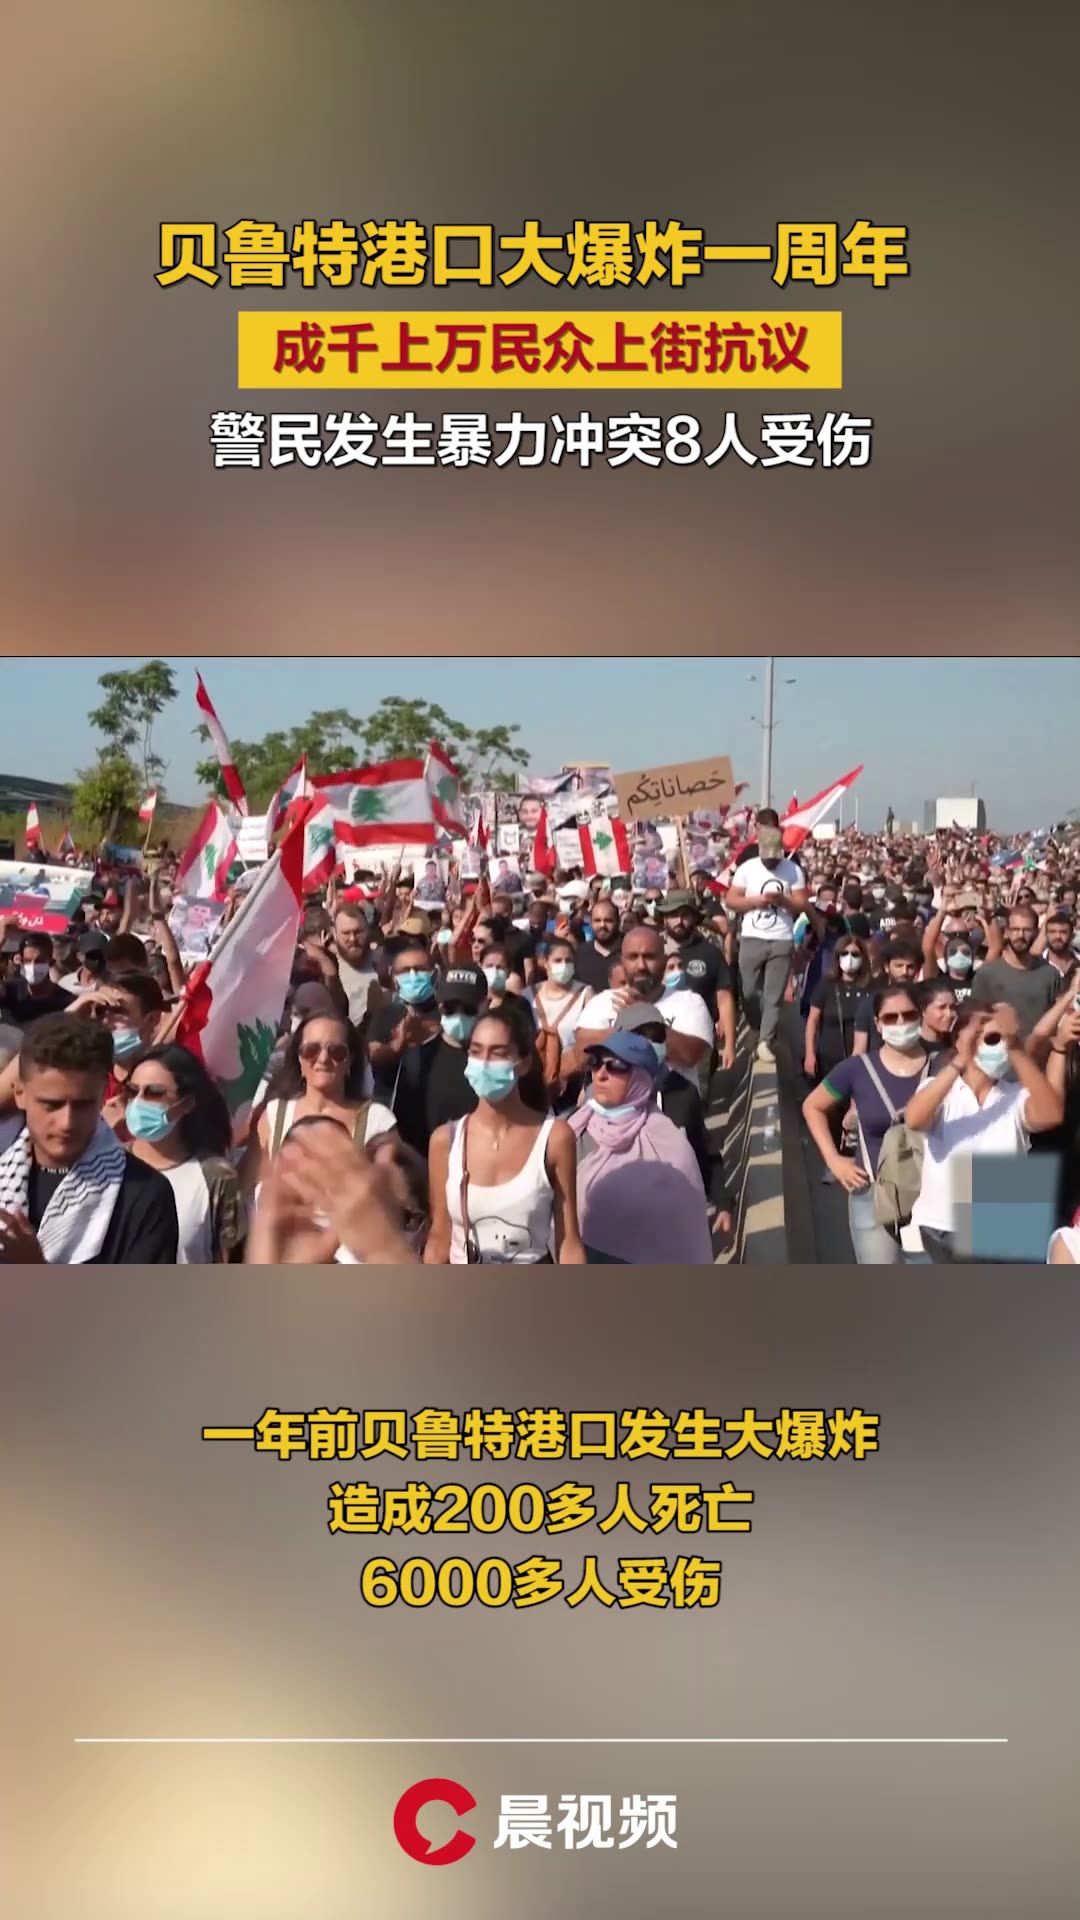 中国重庆核酸企业疑大裁员 员工游行抗议 – 亚洲电视新闻